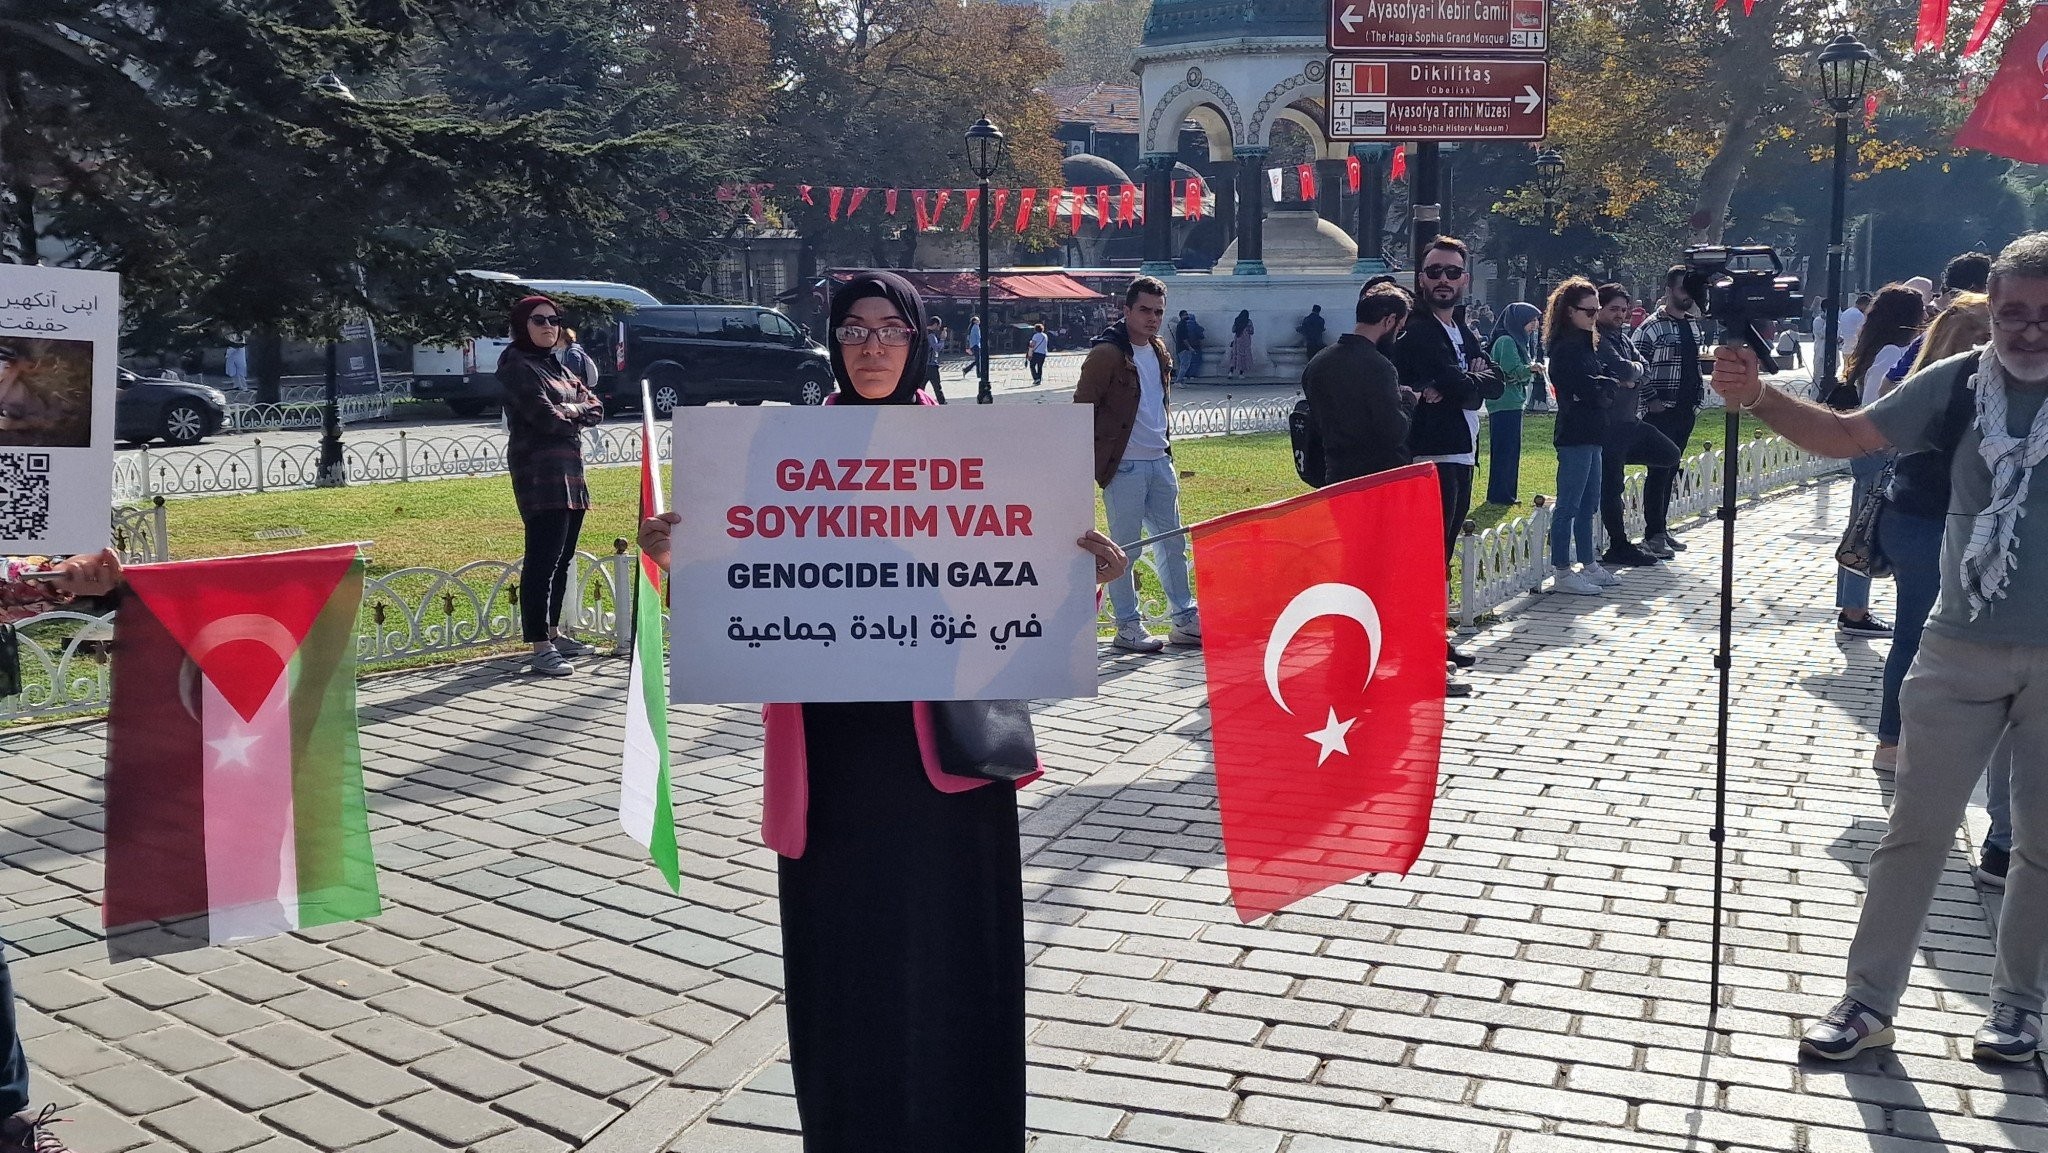 Κωνσταντινούπολη: Συγκέντρωση διαμαρτυρίας για την Παλαιστίνη